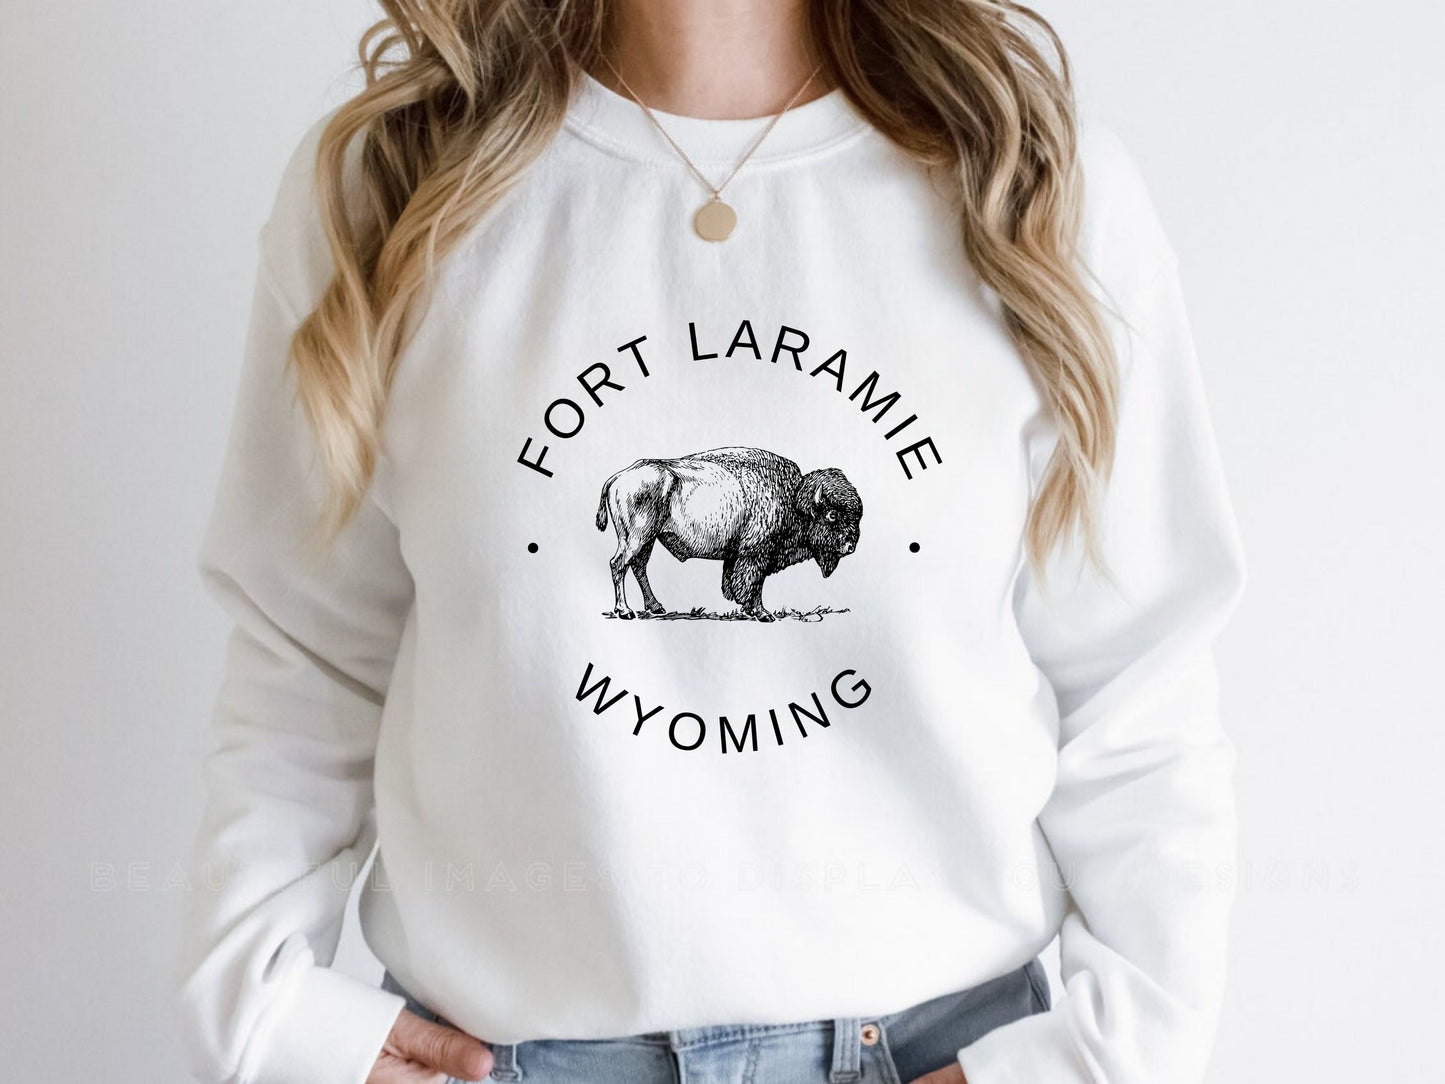 Fort Laramie Women Wyoming Sweatshirt